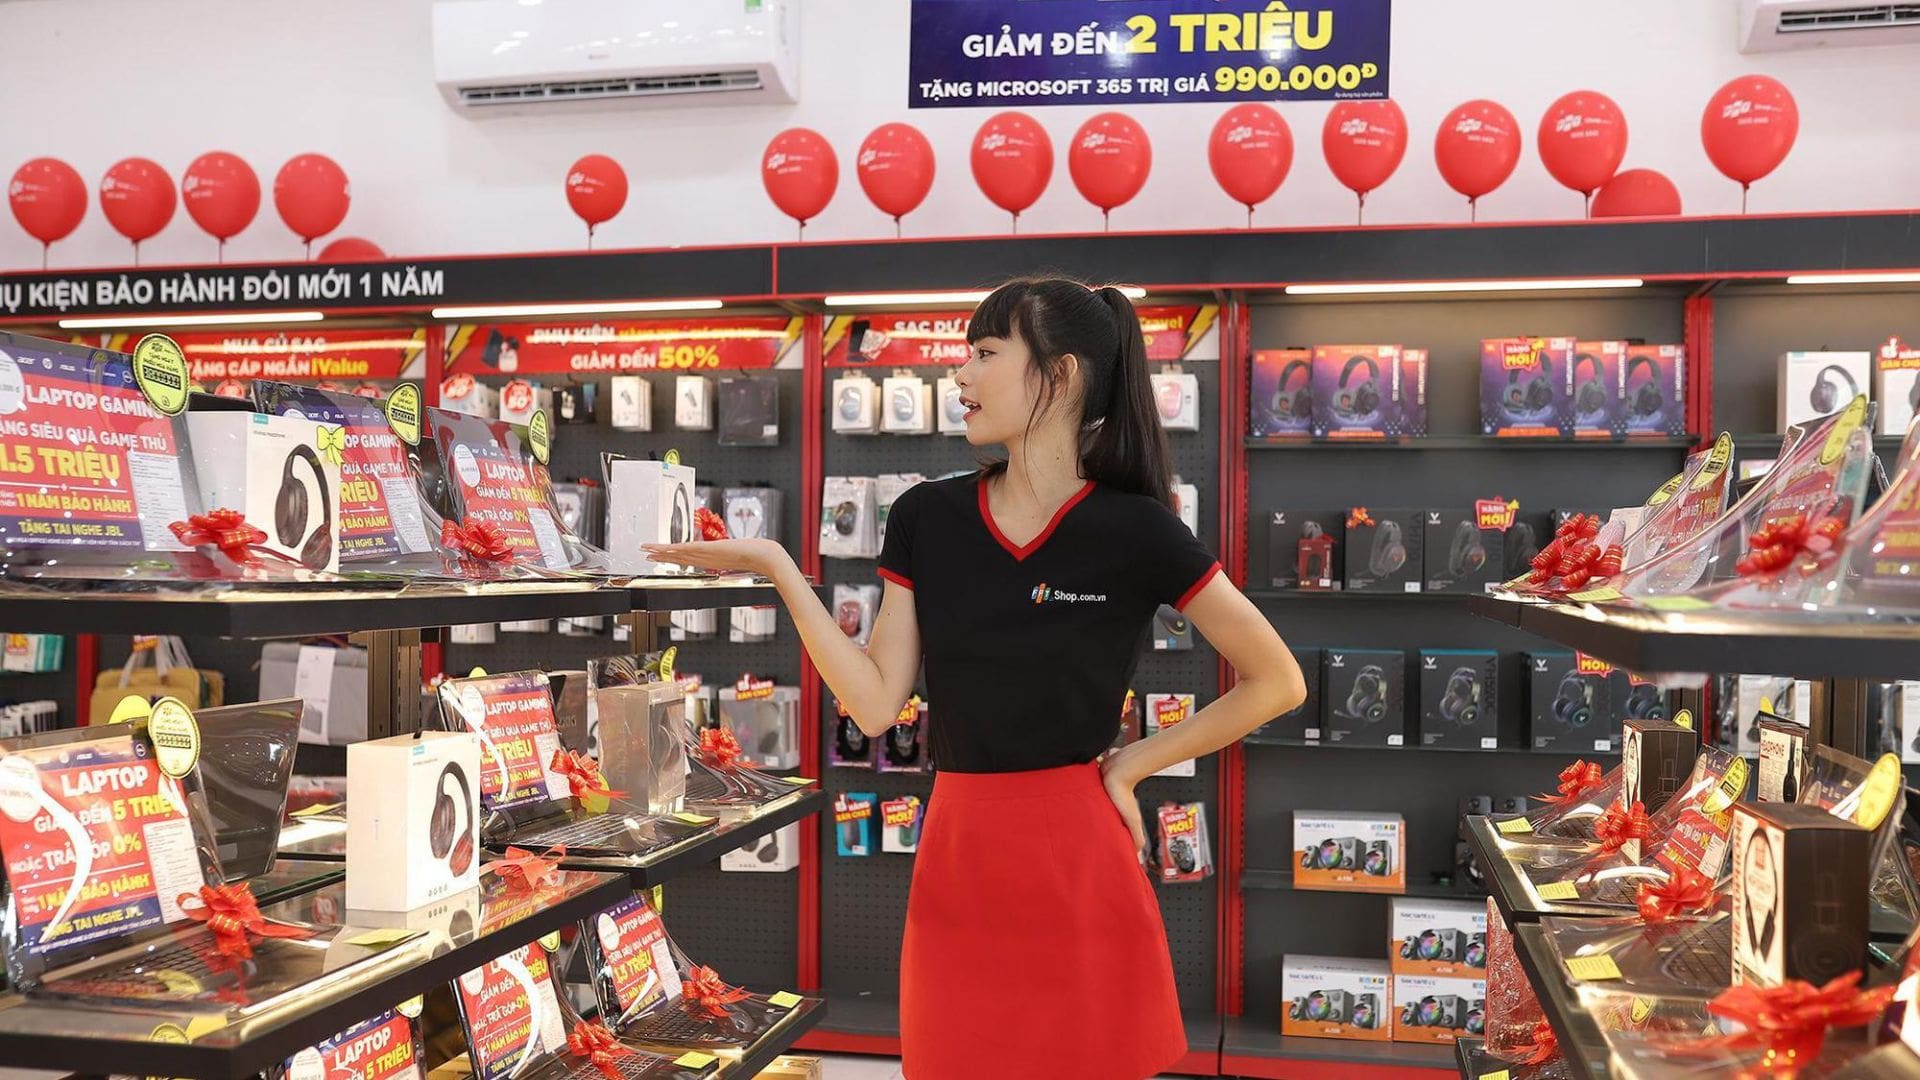 FPT Shop - Cửa hàng bán laptop Đà Nẵng nổi tiếng